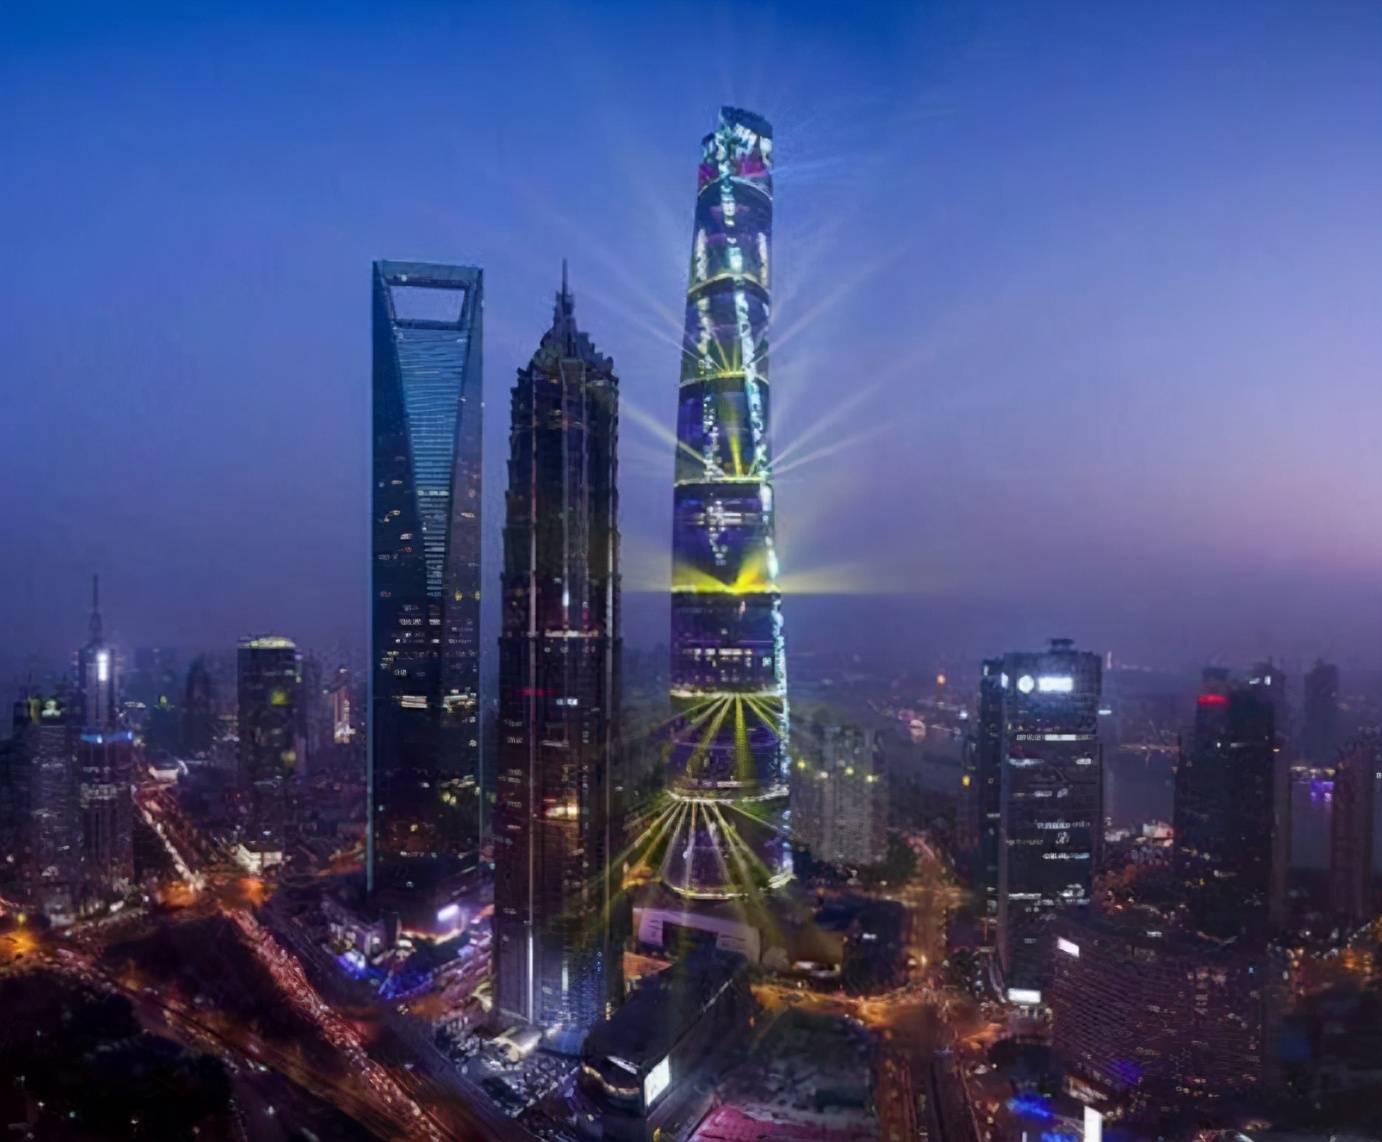 原创上海大厦曾晃动超1米,而华强北晃动,有什么不同?